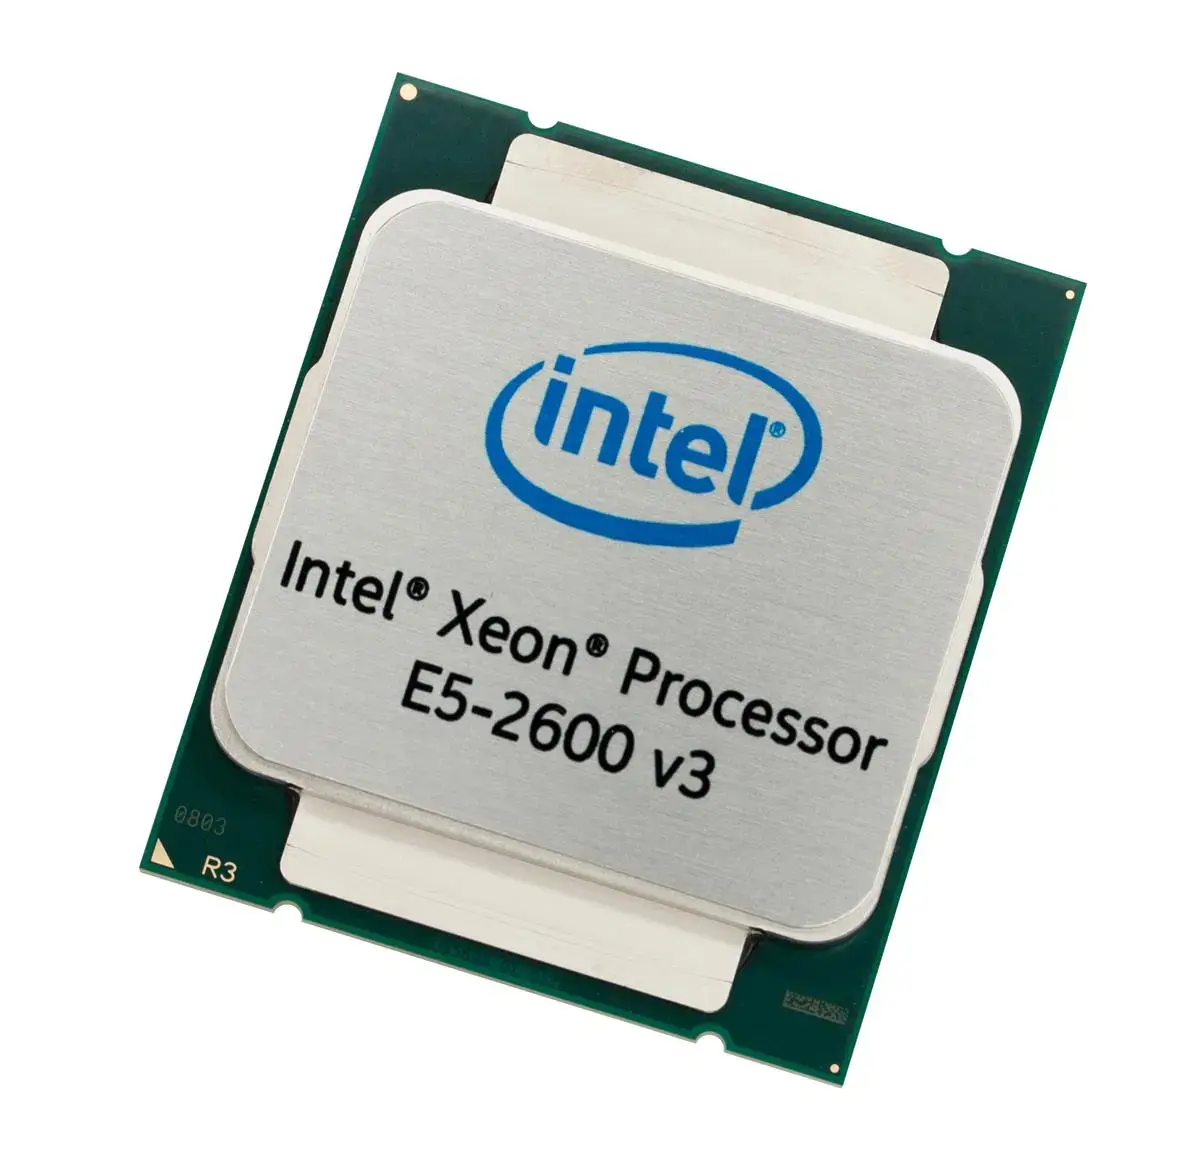 SR0GW Intel Core i7-3960X 6 Core 3.30GHz 5GT / s DMI 15MB SmartCache Socket FCLGA2011 Processor